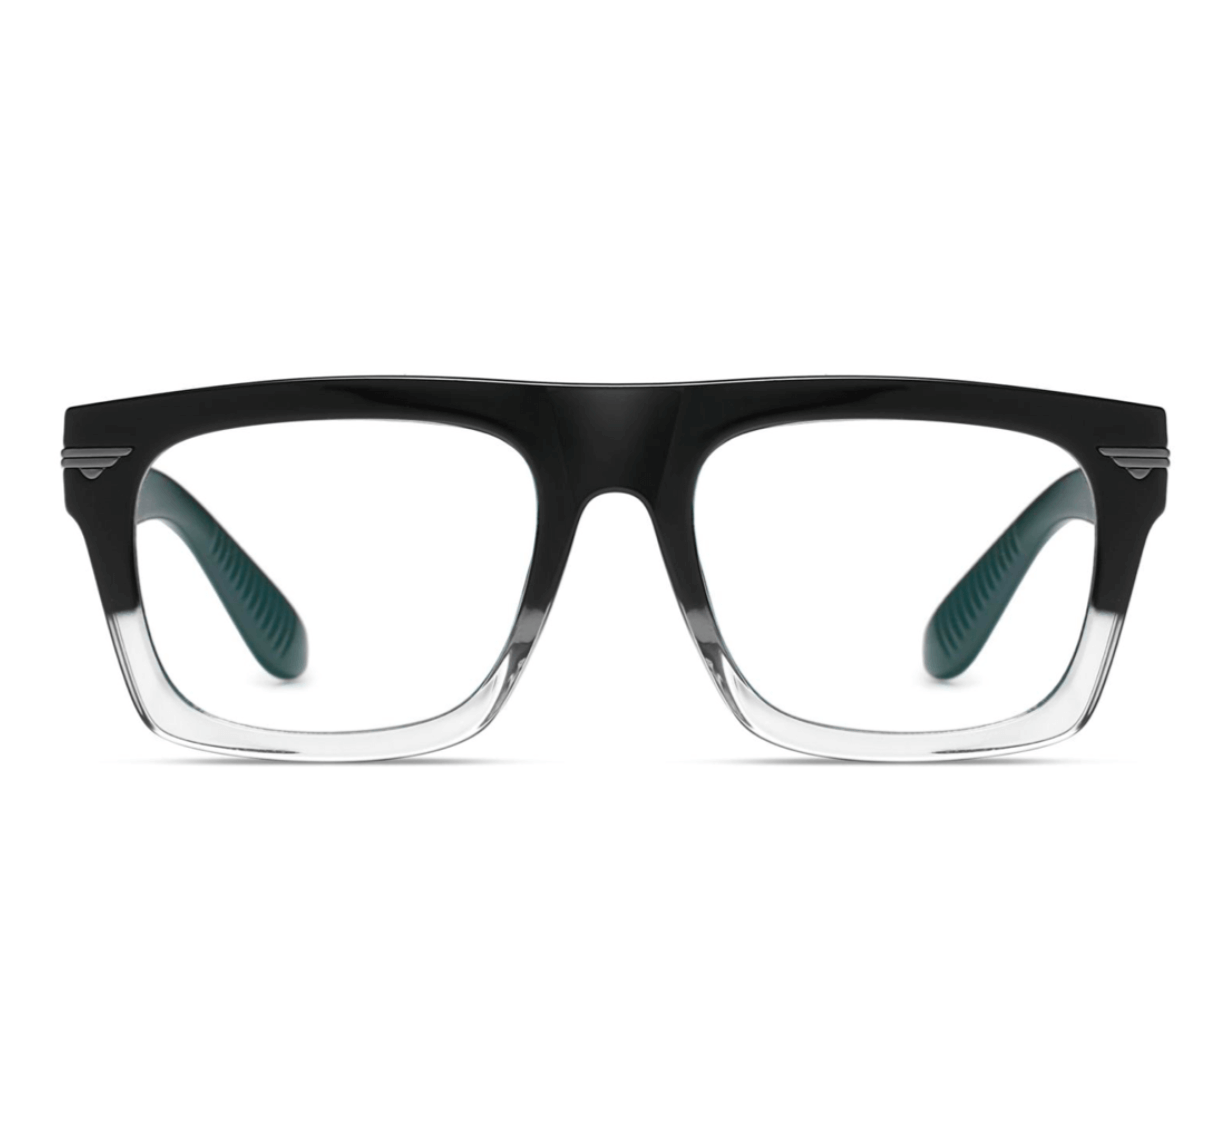 Plastic Eyeglasses Frames, custom made spectacle frames, glass frame maker, Eyeglasses manufacturer